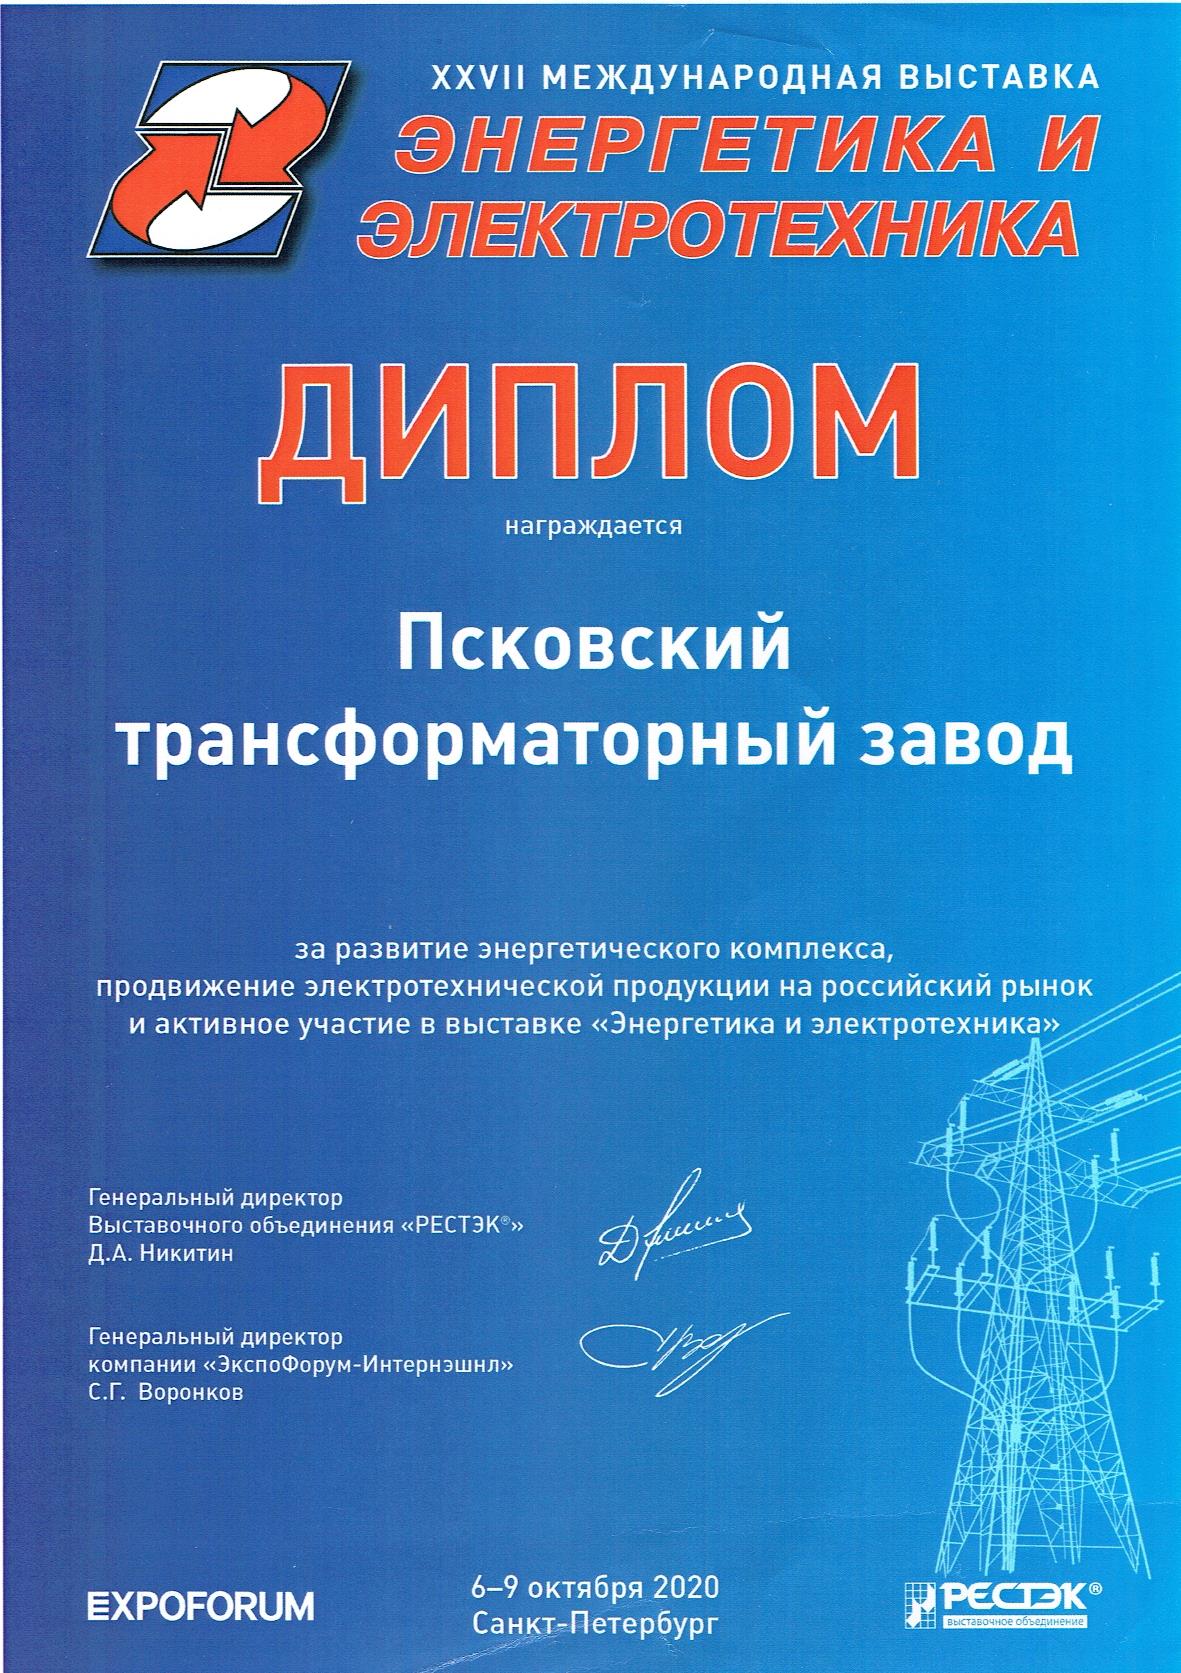 Выставка "Энергетика и электротехника - 2020"